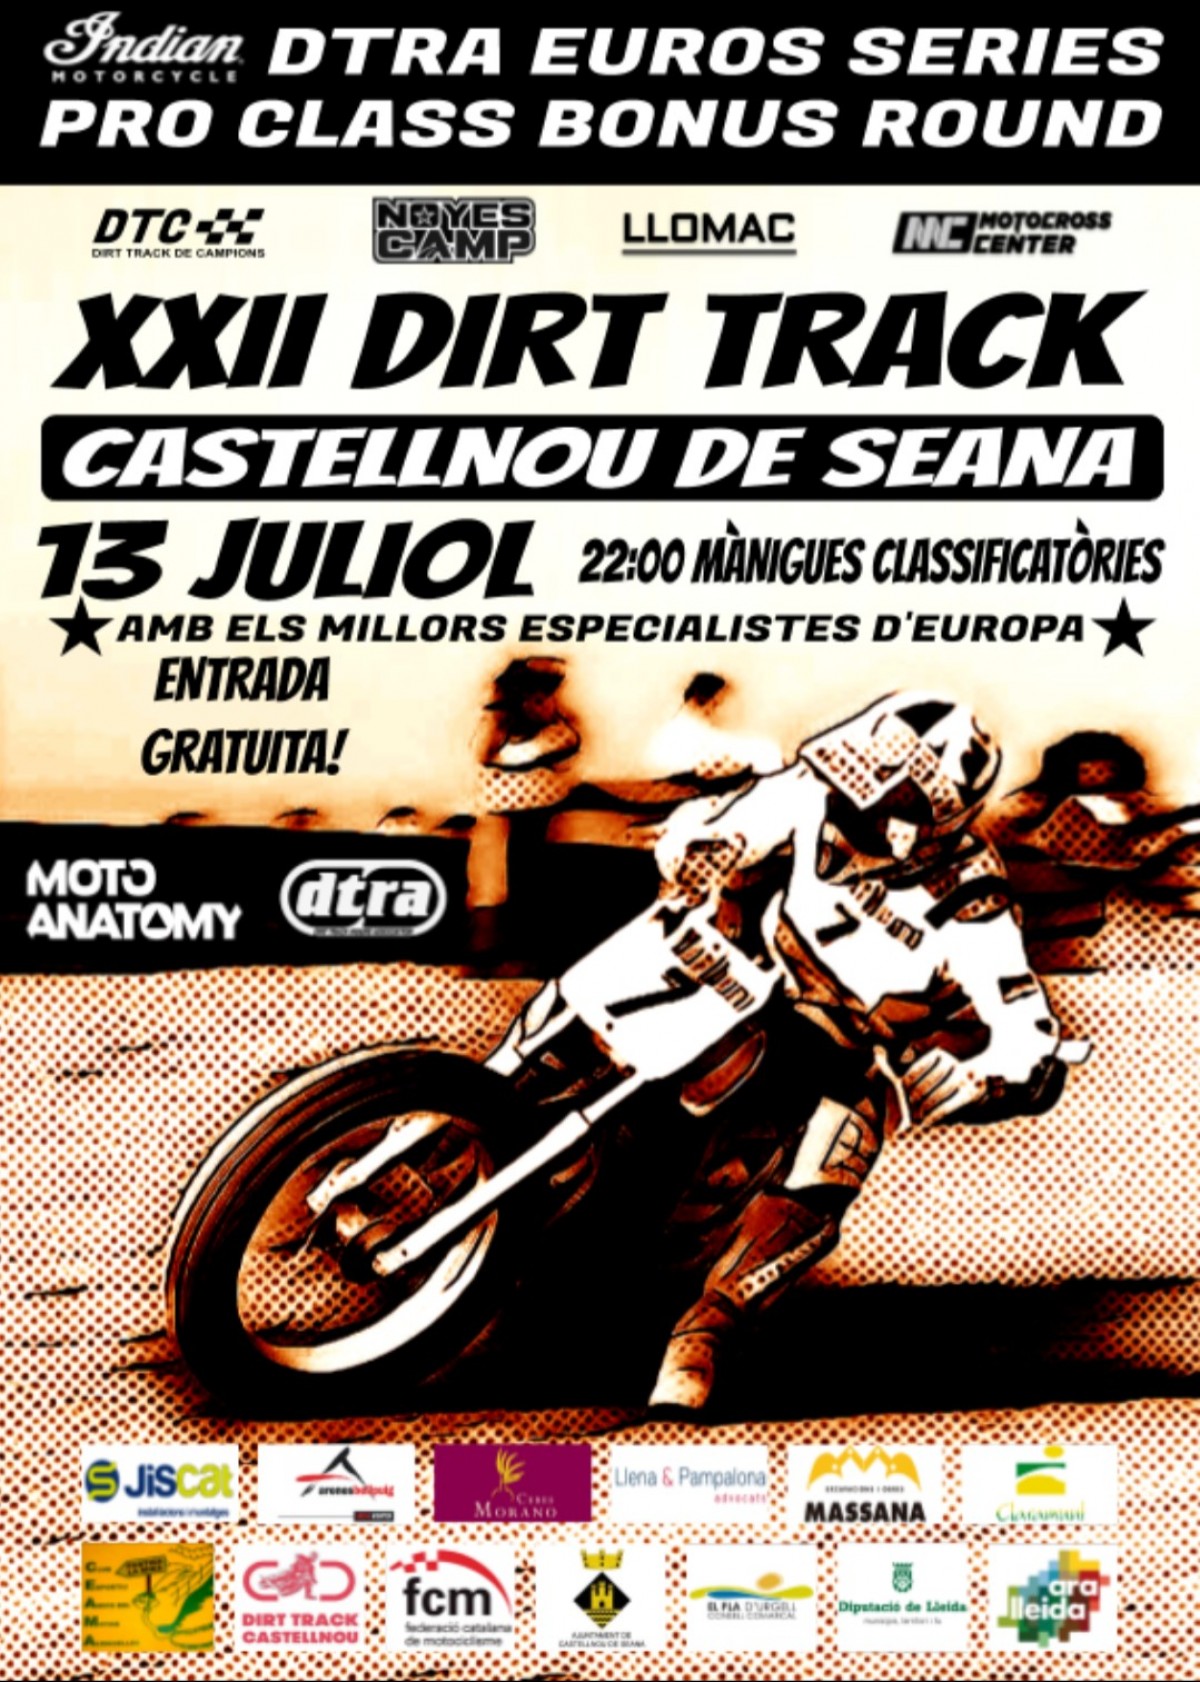 Dirt Track de Campions - Round 4 - Castellnou de Seana